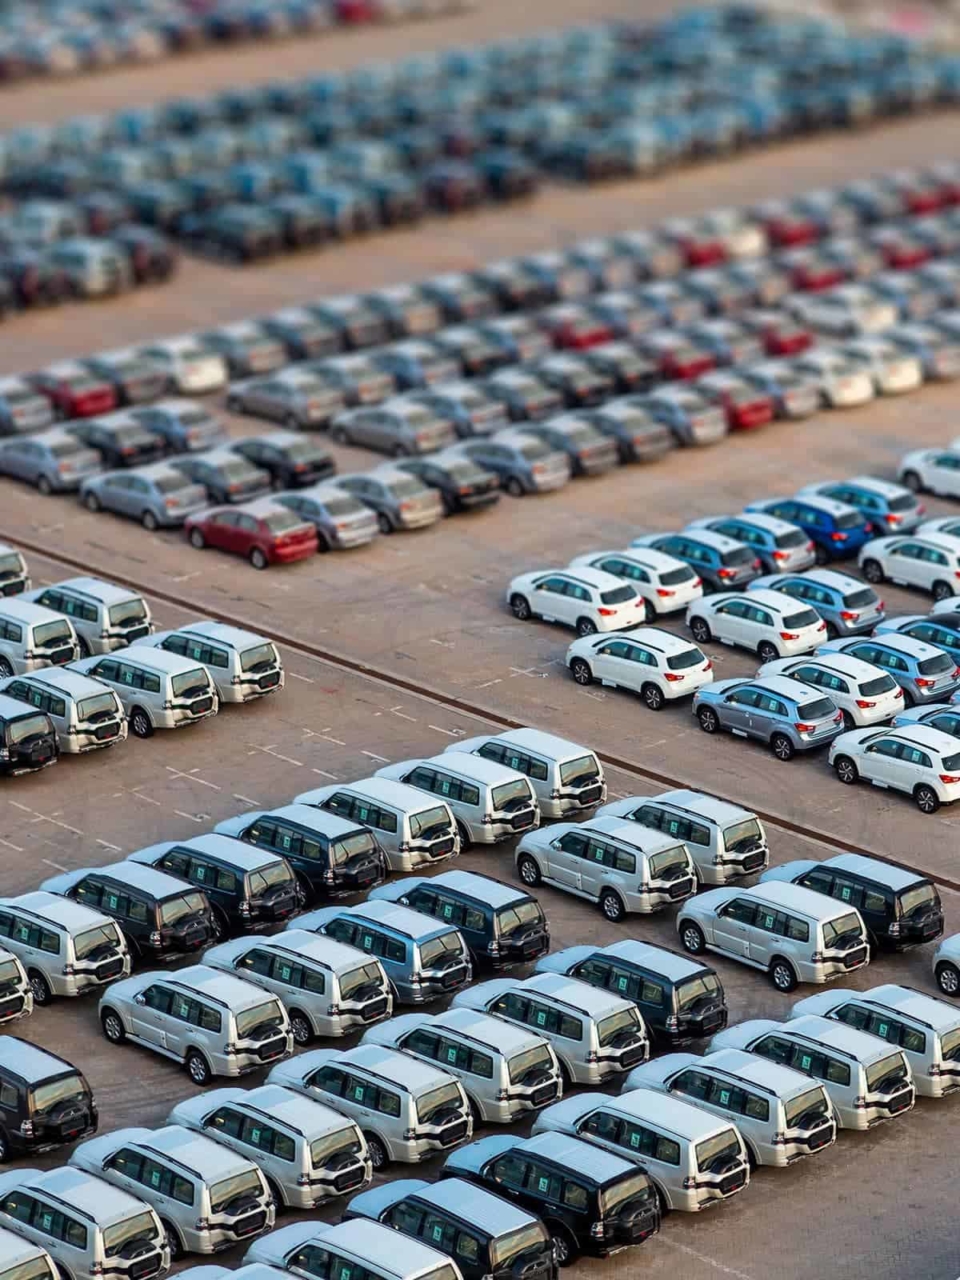 Fleet of cars in a parking lot